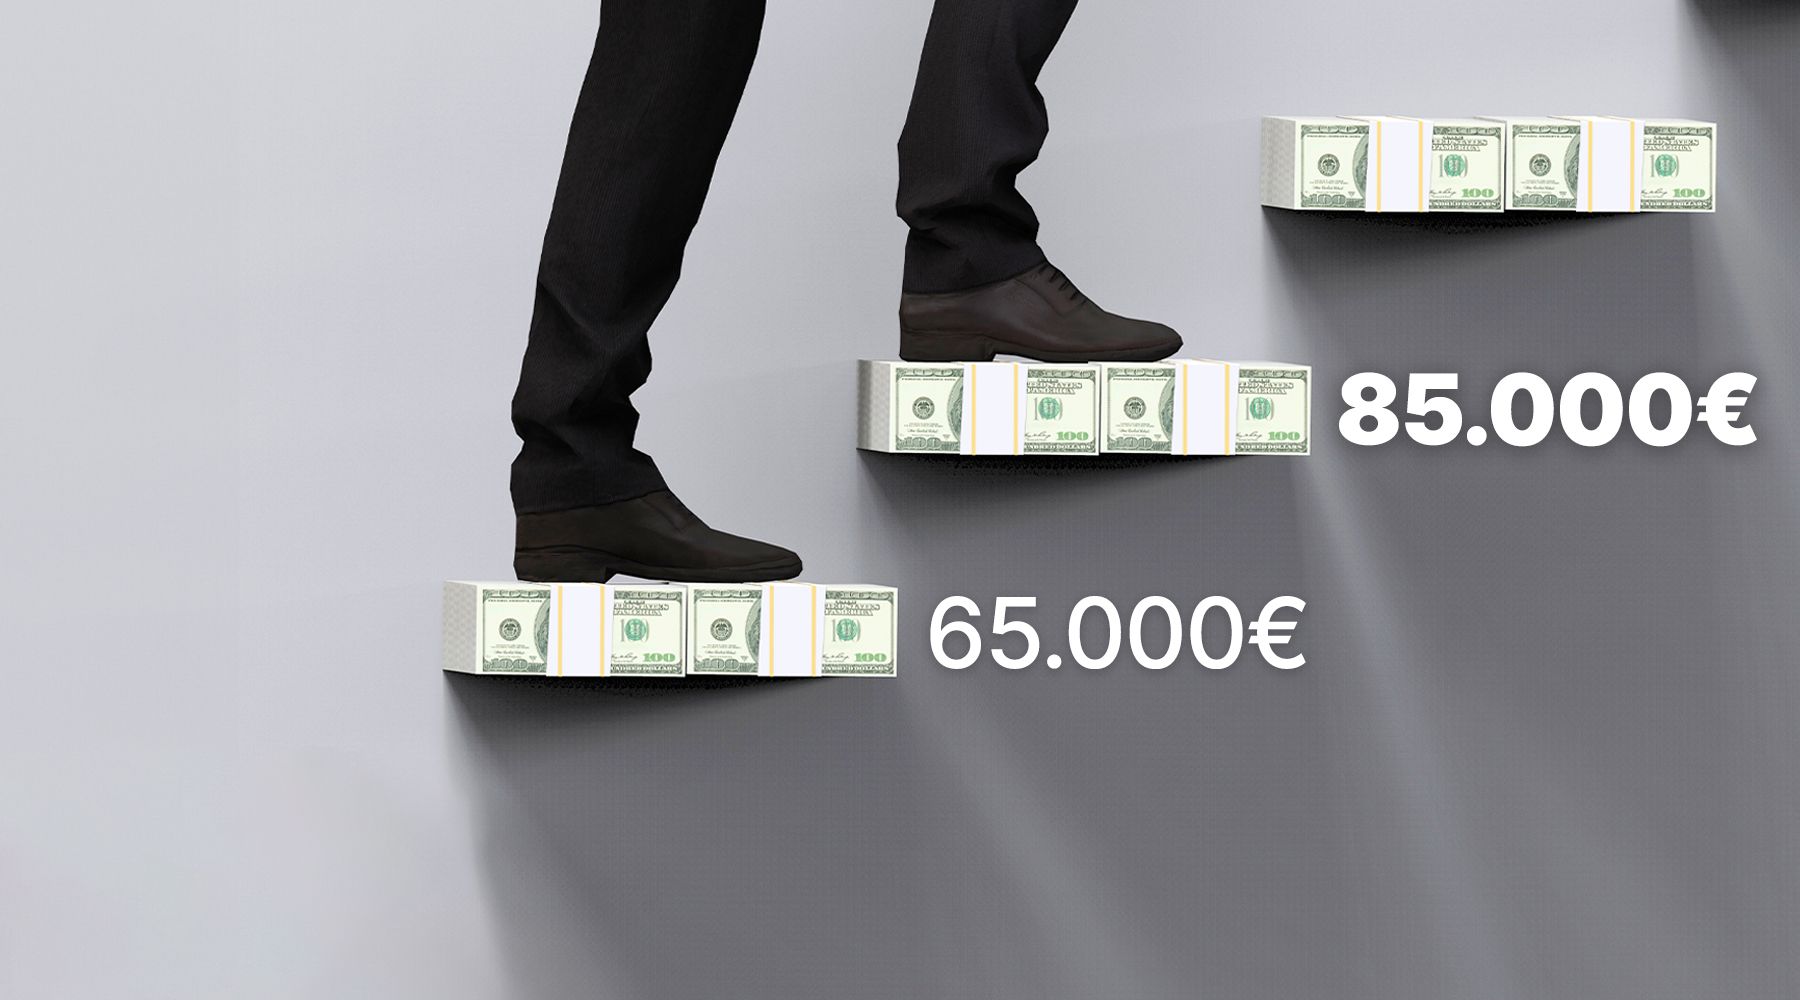 Titolo: Da 65.000€ a 85.000€: rivoluzione nel Regime Forfettario